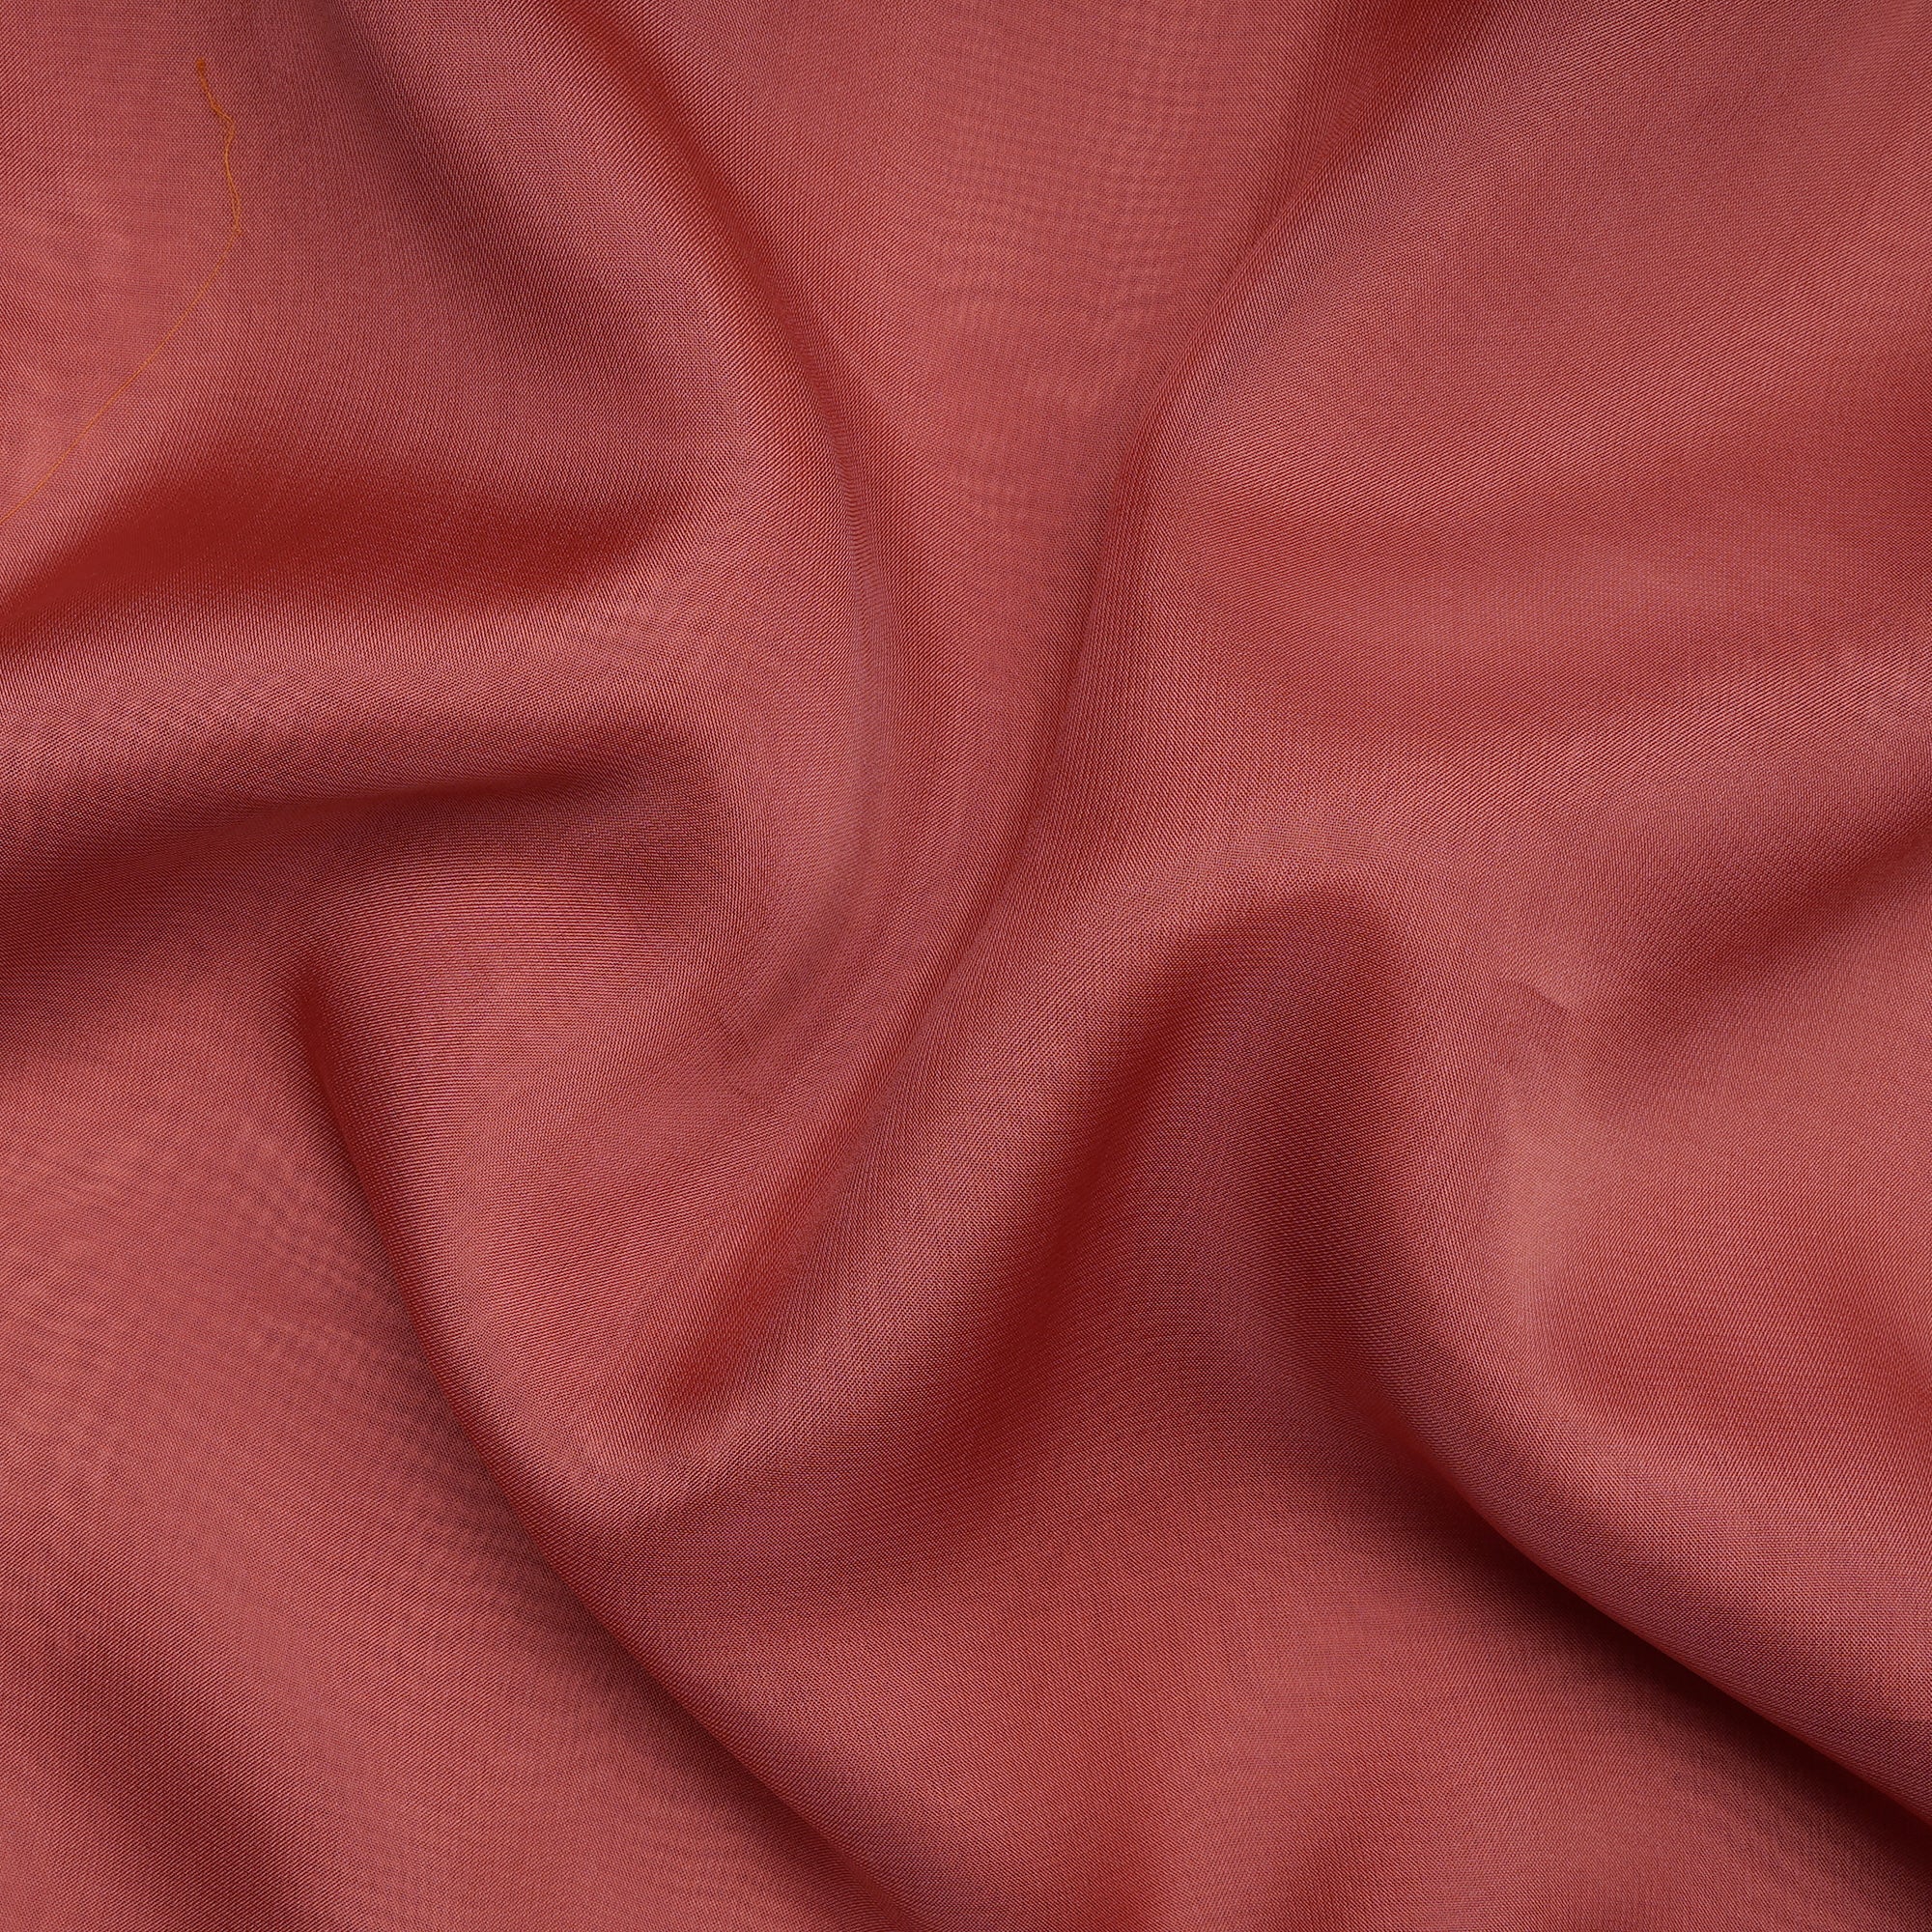 Salmon Pink Mill Dyed Viscose Organza Fabric